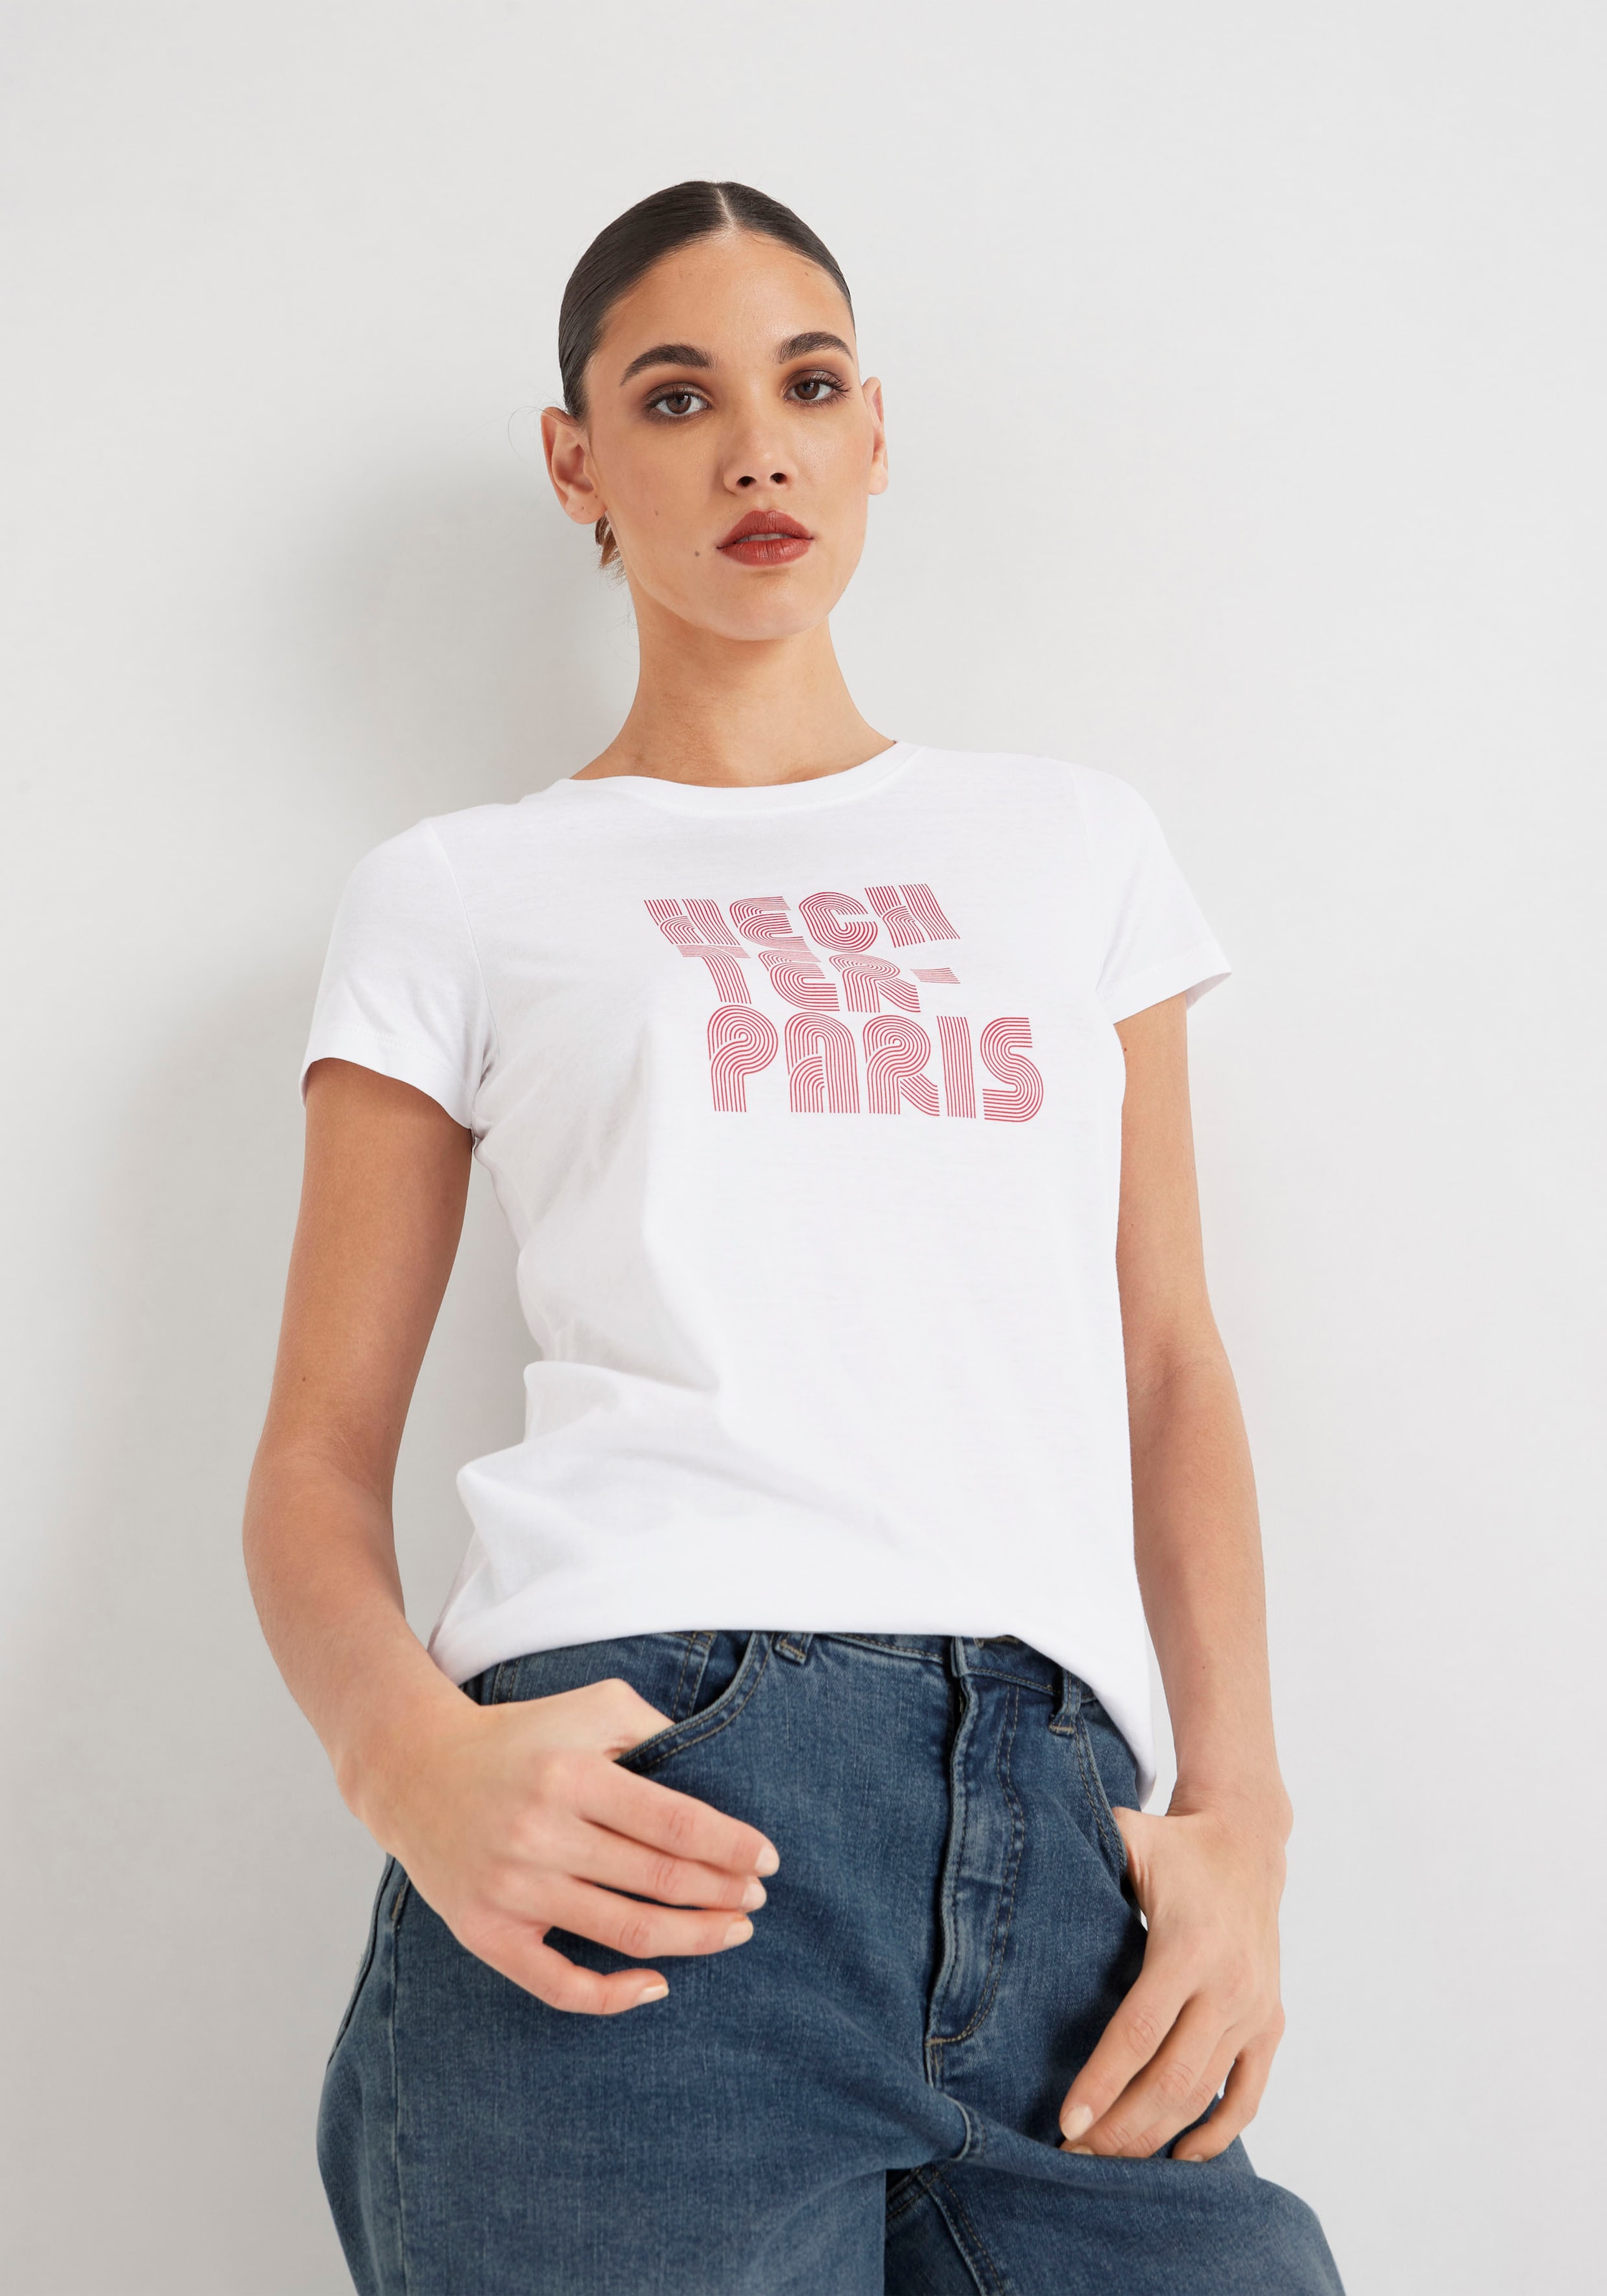 Notfallgroßer Preisnachlass HECHTER PARIS T-Shirt, BAUR | Druck kaufen mit